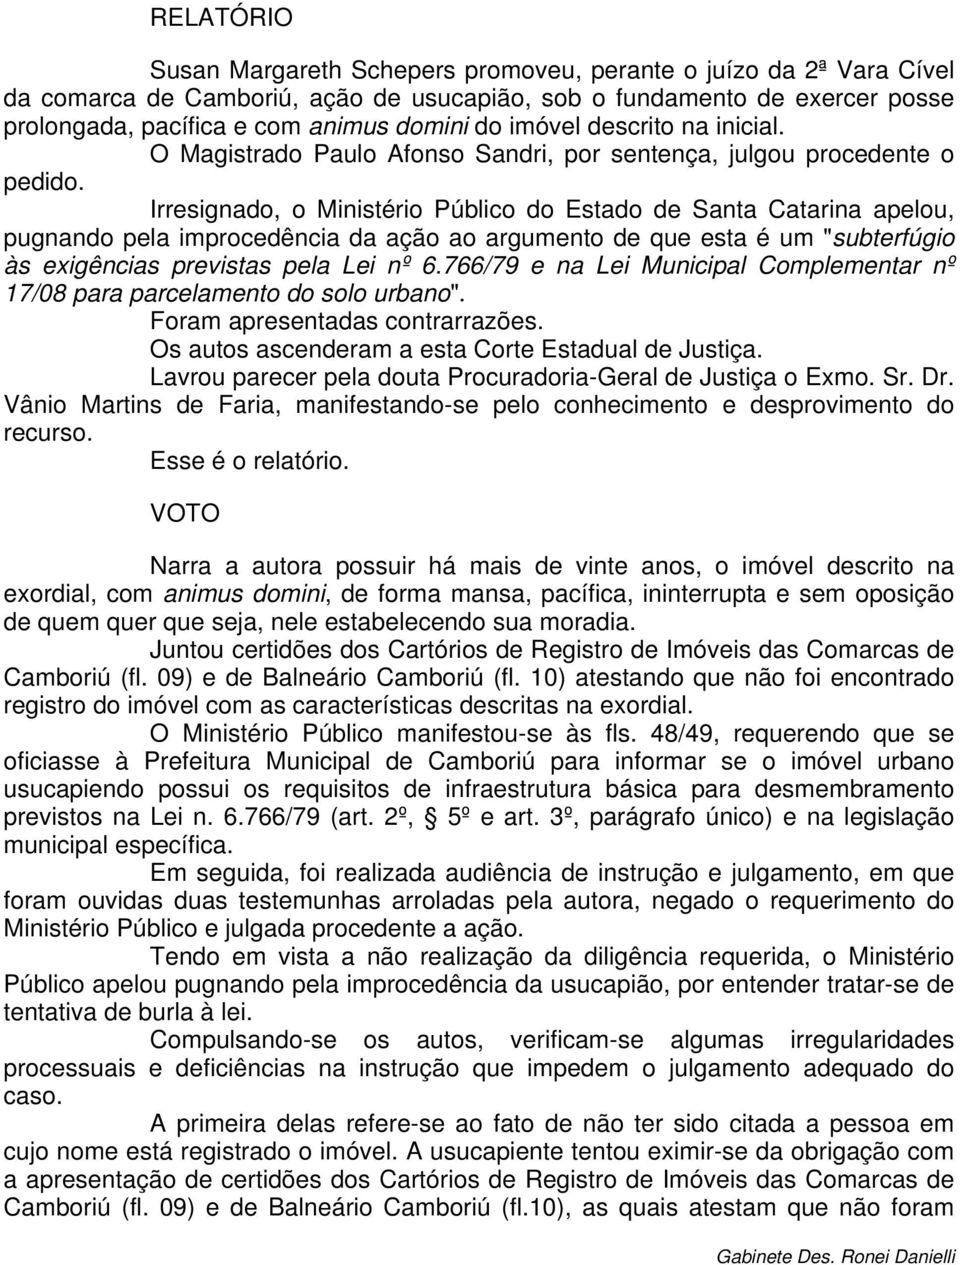 Irresignado, o Ministério Público do Estado de Santa Catarina apelou, pugnando pela improcedência da ação ao argumento de que esta é um "subterfúgio às exigências previstas pela Lei nº 6.